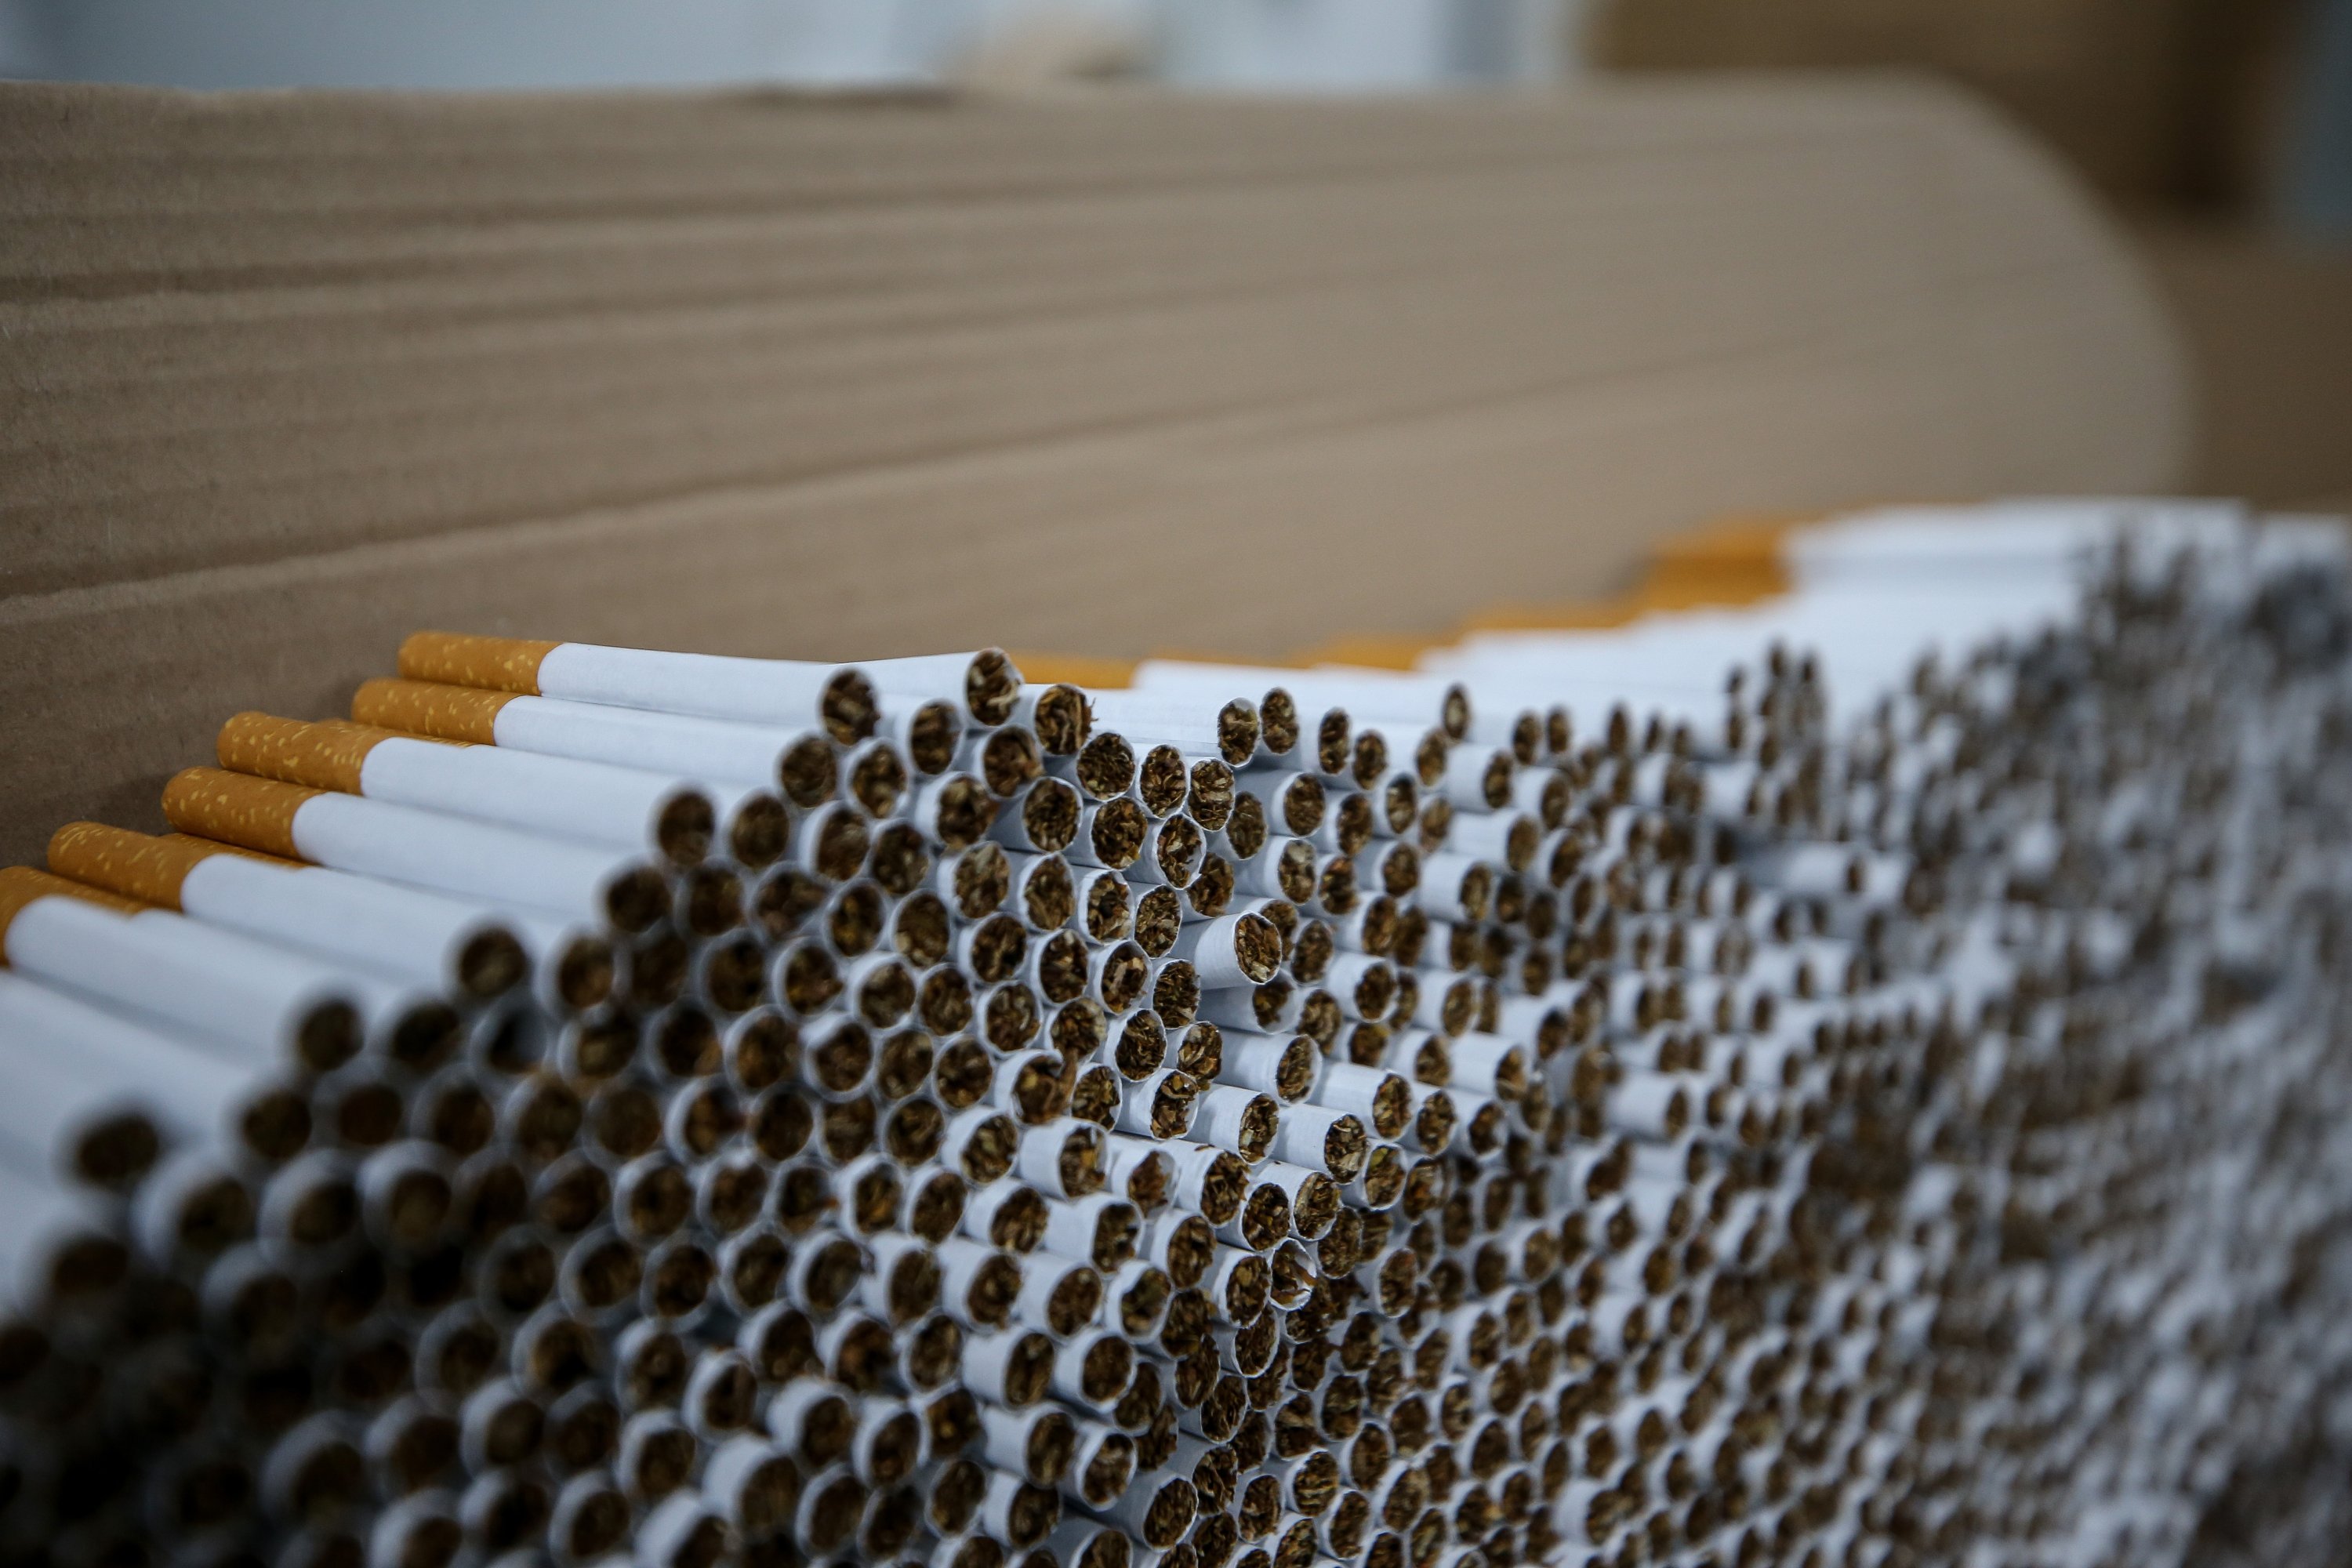 Turkey seizes large haul of bootleg cigarettes